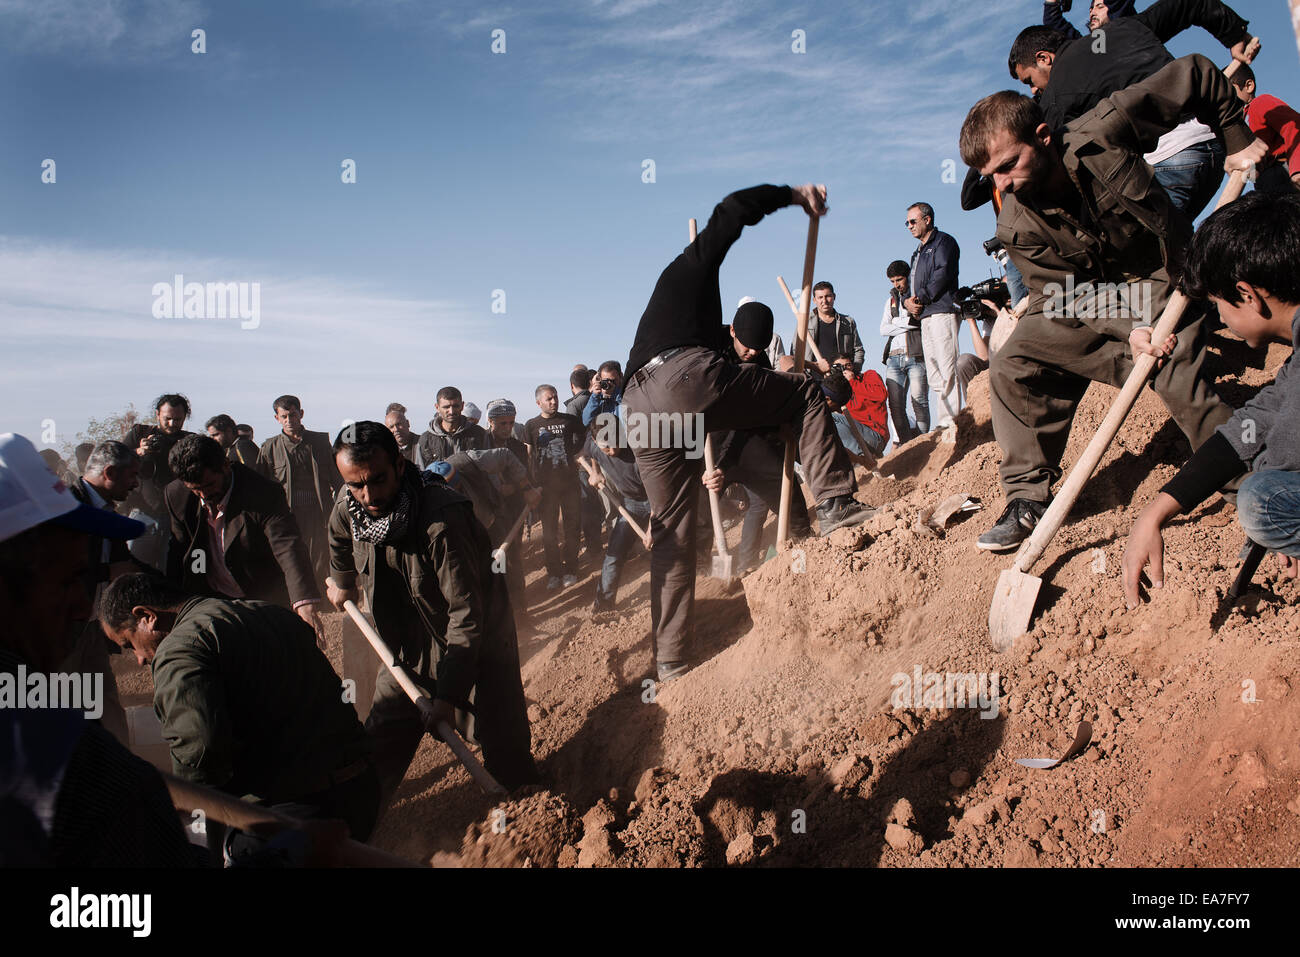 Kurdische Flüchtlinge begraben 3 kurdischen YPG-Kämpfer, die starben in den kämpfen gegen die islamischen Staat Kräfte in Kobane, Suruc, Türkei Stockfoto